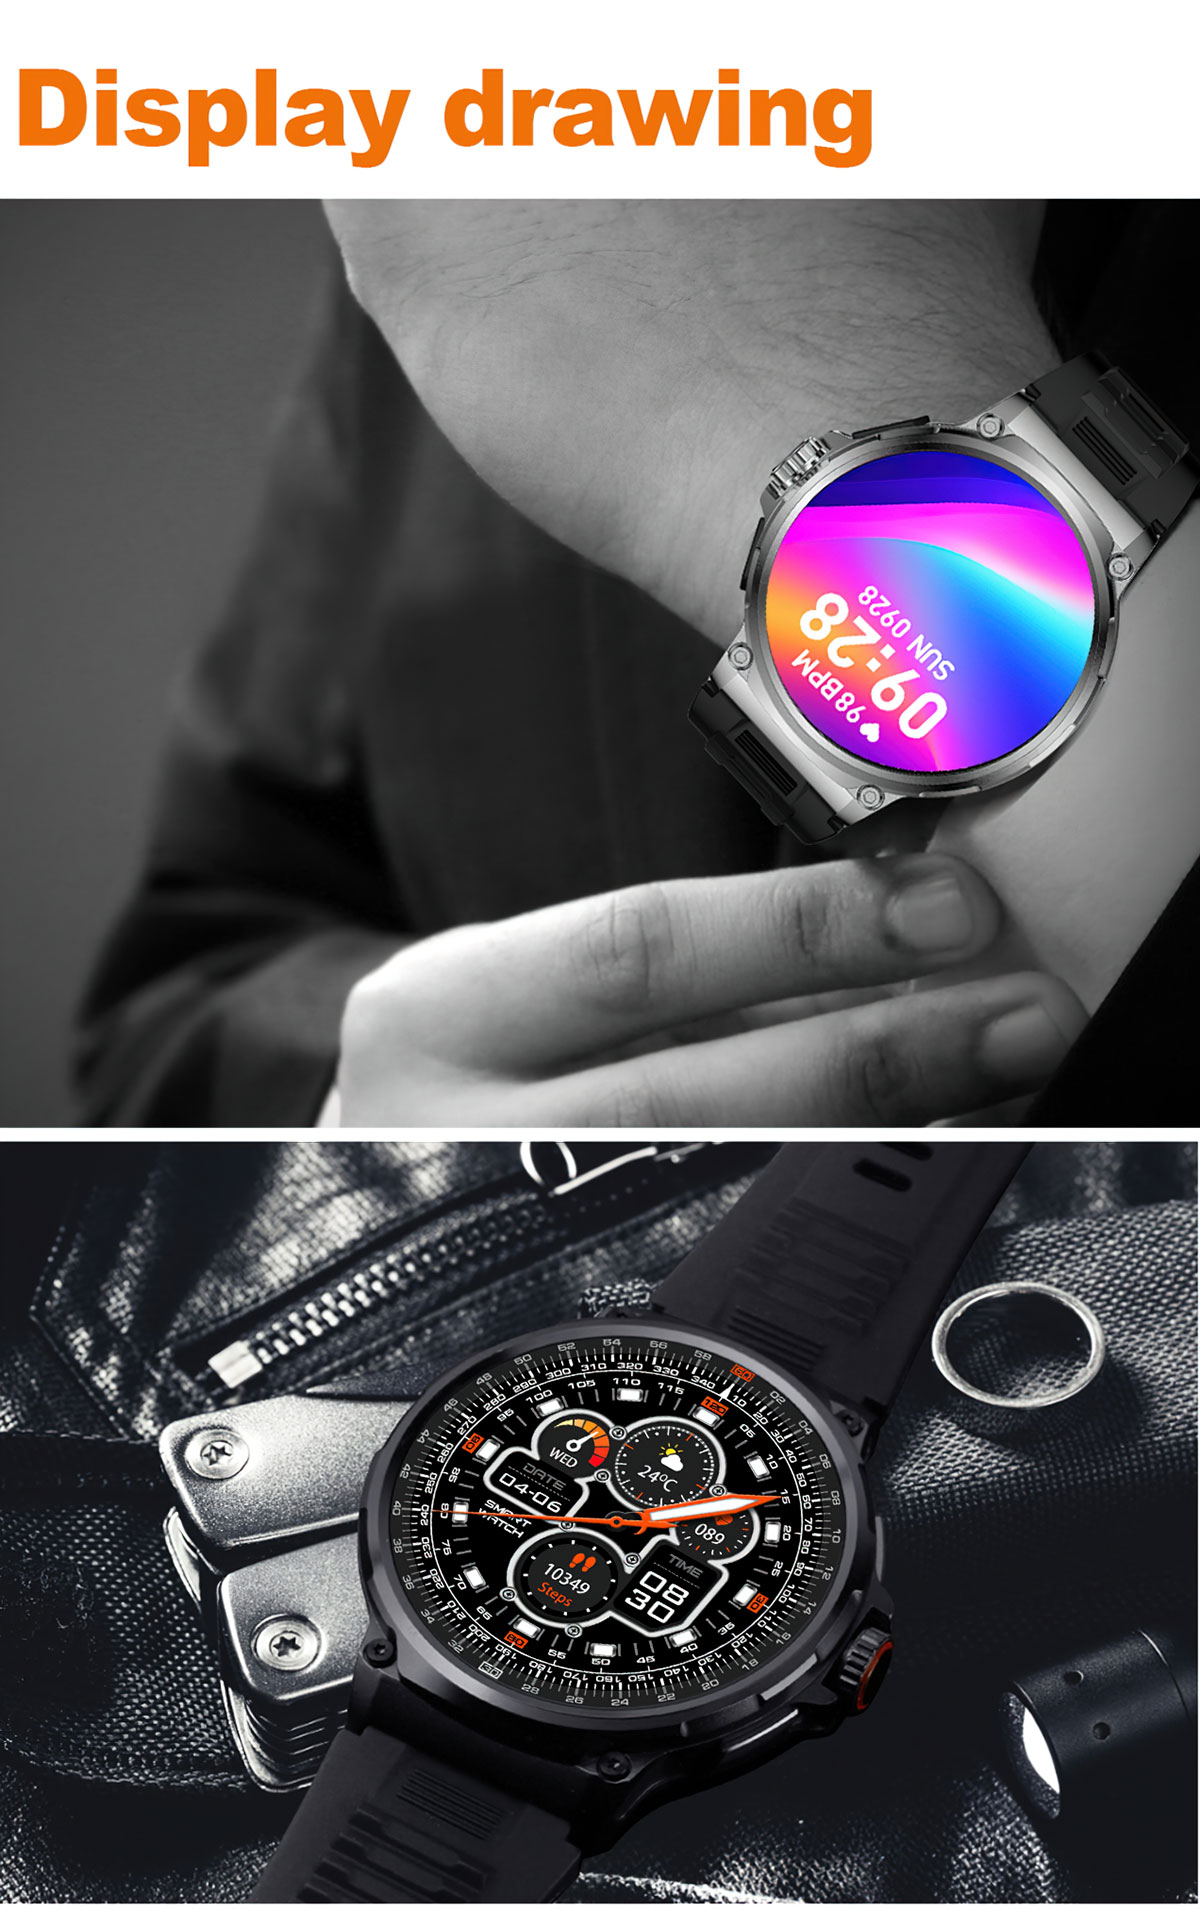 V69 Smartwatch 1.85 դյույմանոց էկրան 400+ ժամացույց 710 mAh մարտկոցով Smart Watch